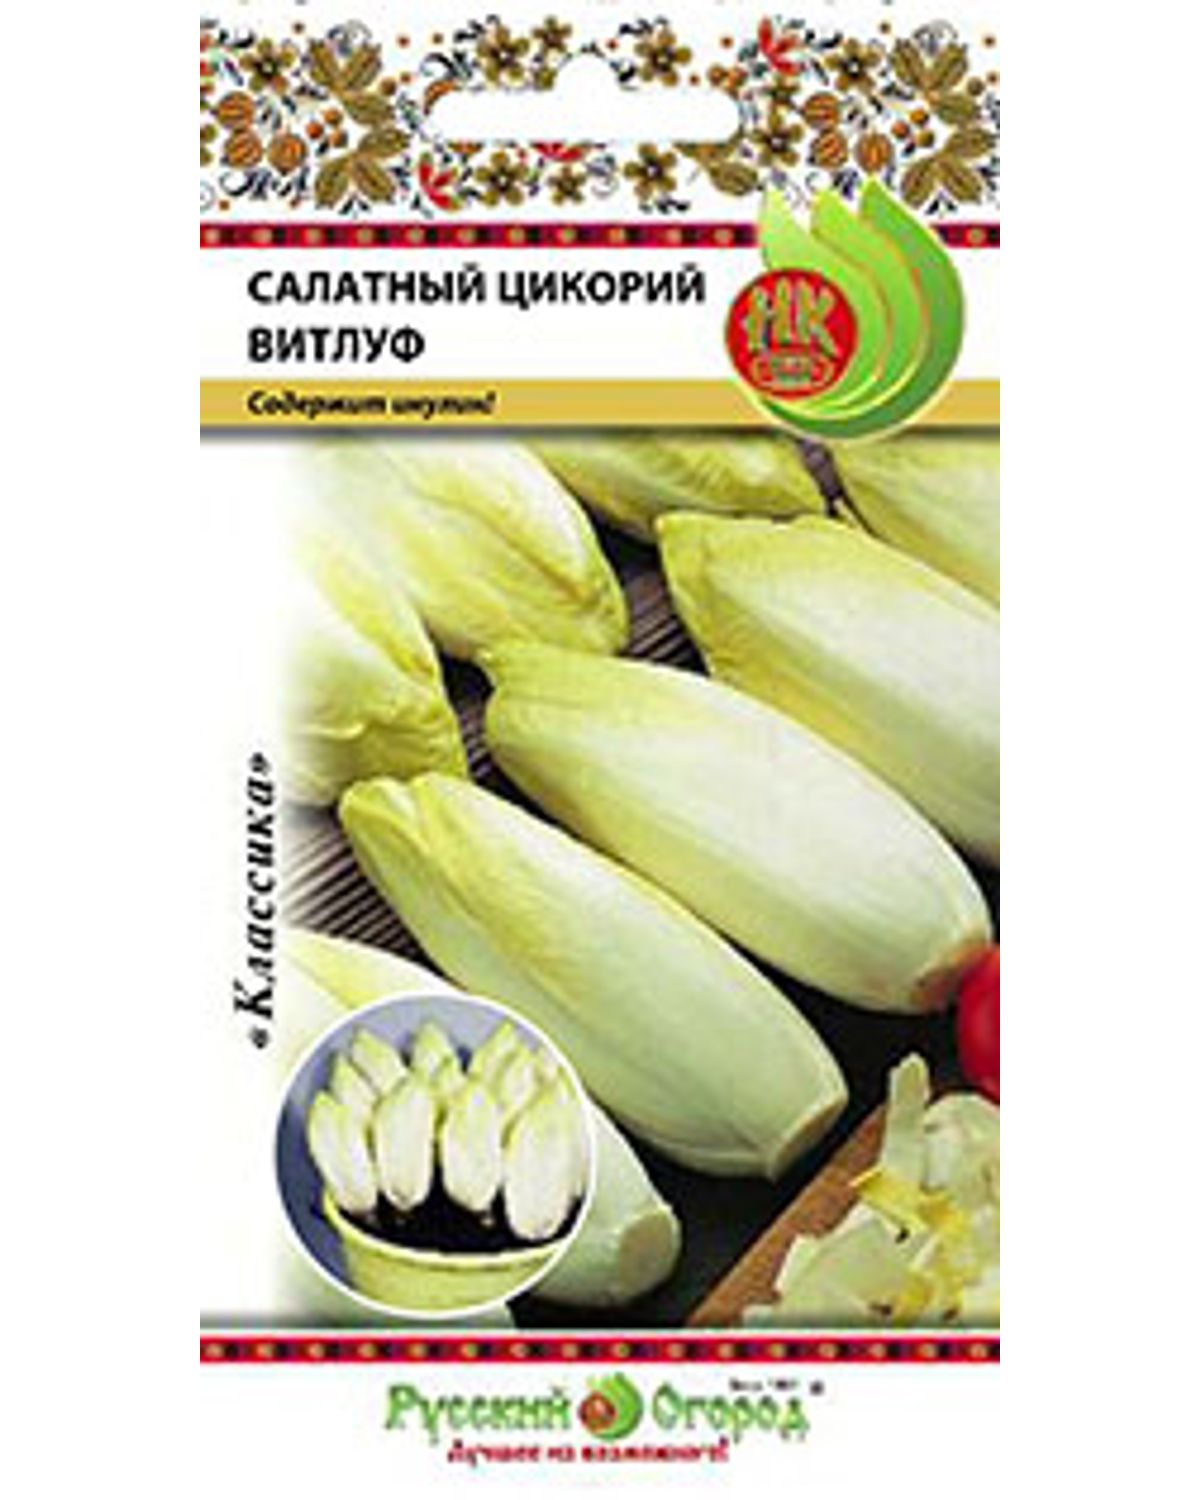 Семена салат Русский огород Витлуф 307427 1 уп. - отзывы покупателей наМегамаркет